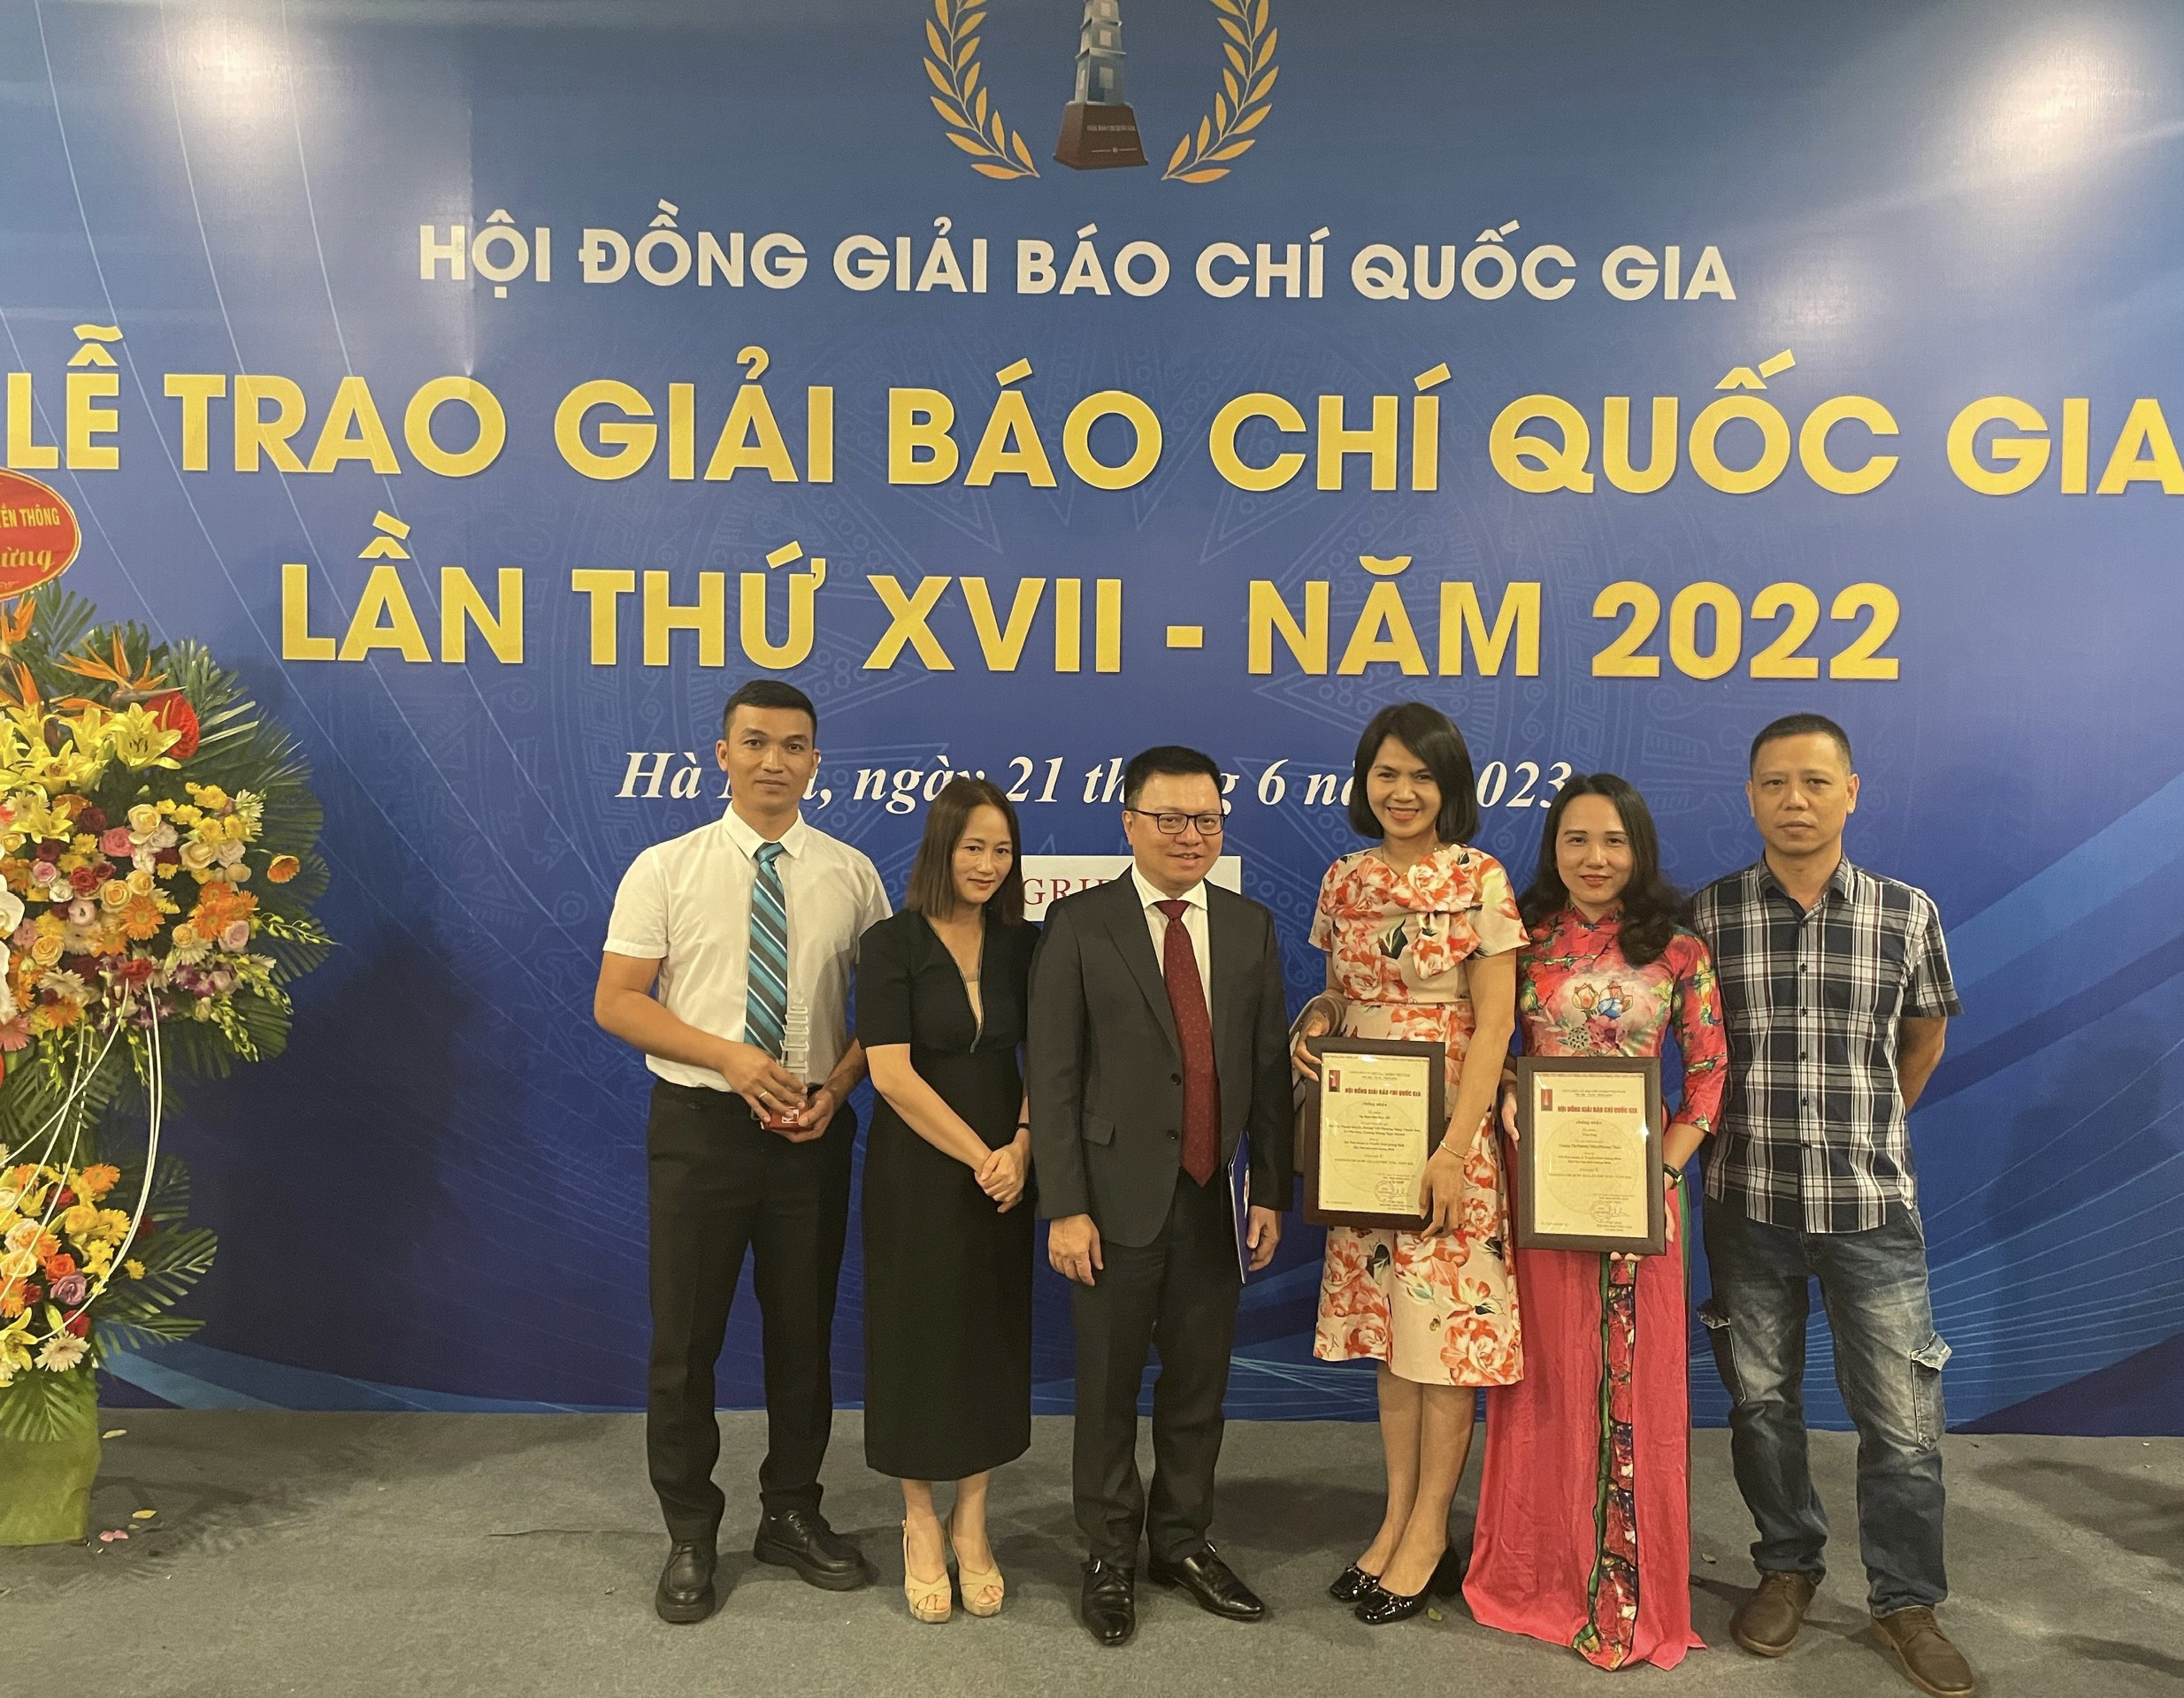 Đồng chí Lê Quốc Minh, Ủy viên Trung ương Đảng, Phó Trưởng ban Tuyên giáo Trung ương, Chủ tịch Hội Nhà báo Việt Nam (ở giữa) cùng các tác giả đoạt giải tại lễ trao Giải Báo chí quốc gia lần thứ XVII năm 2022. 